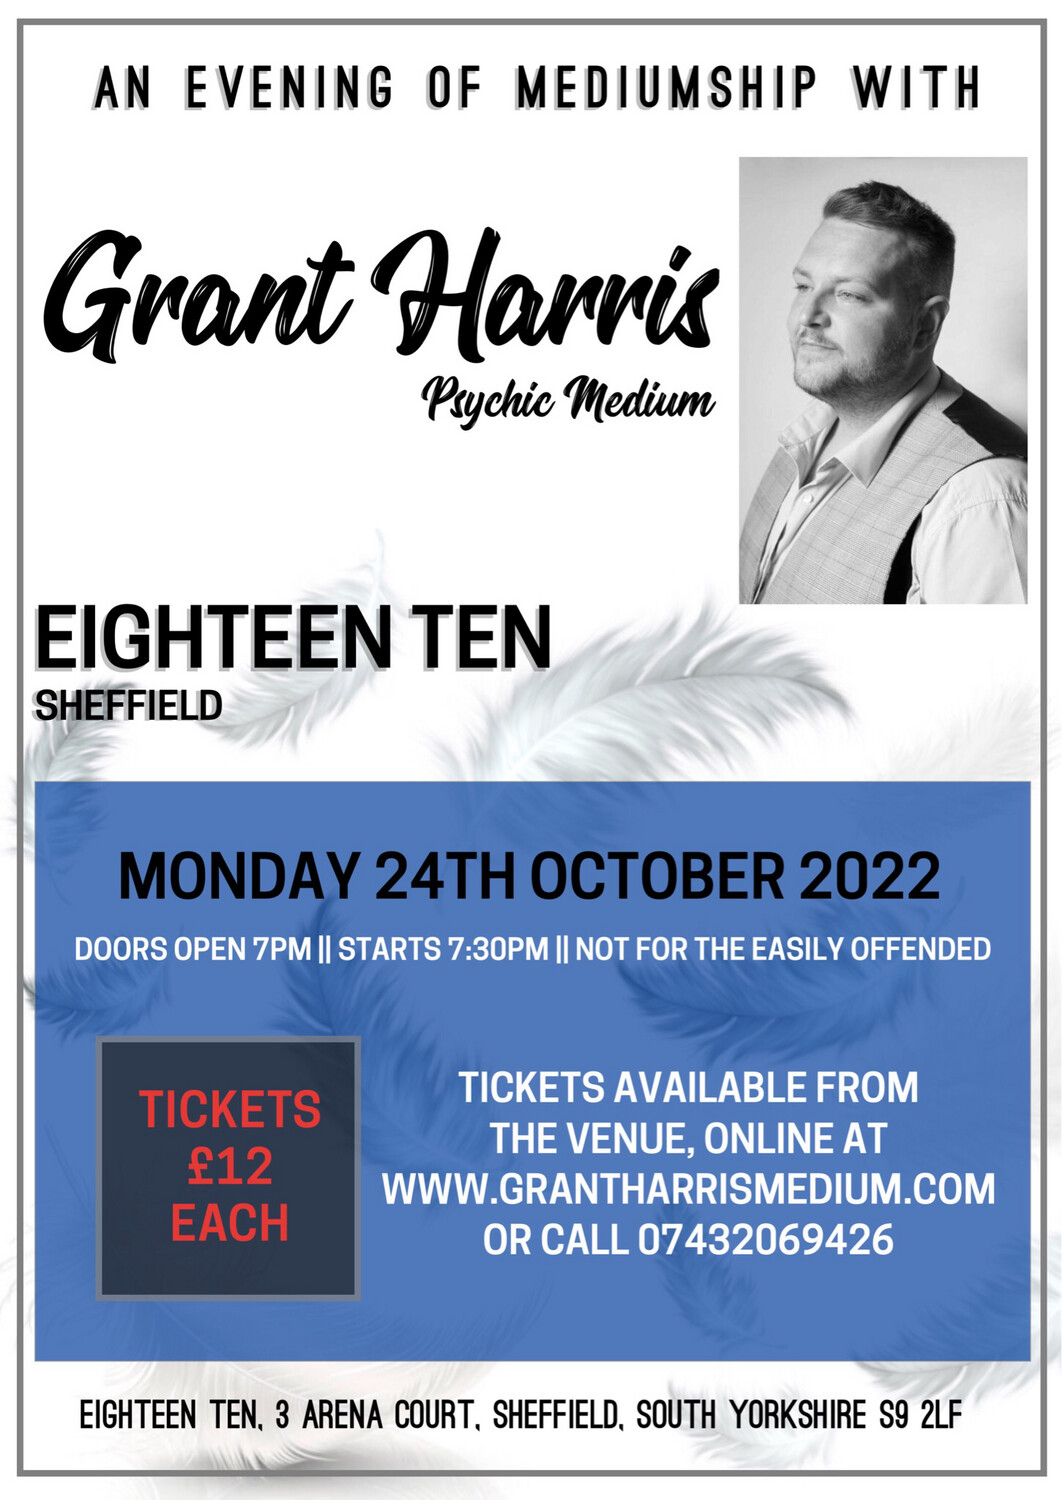 Evening of Mediumship, Eighteen Ten, Sheffield, Mon 24th Oct 2022